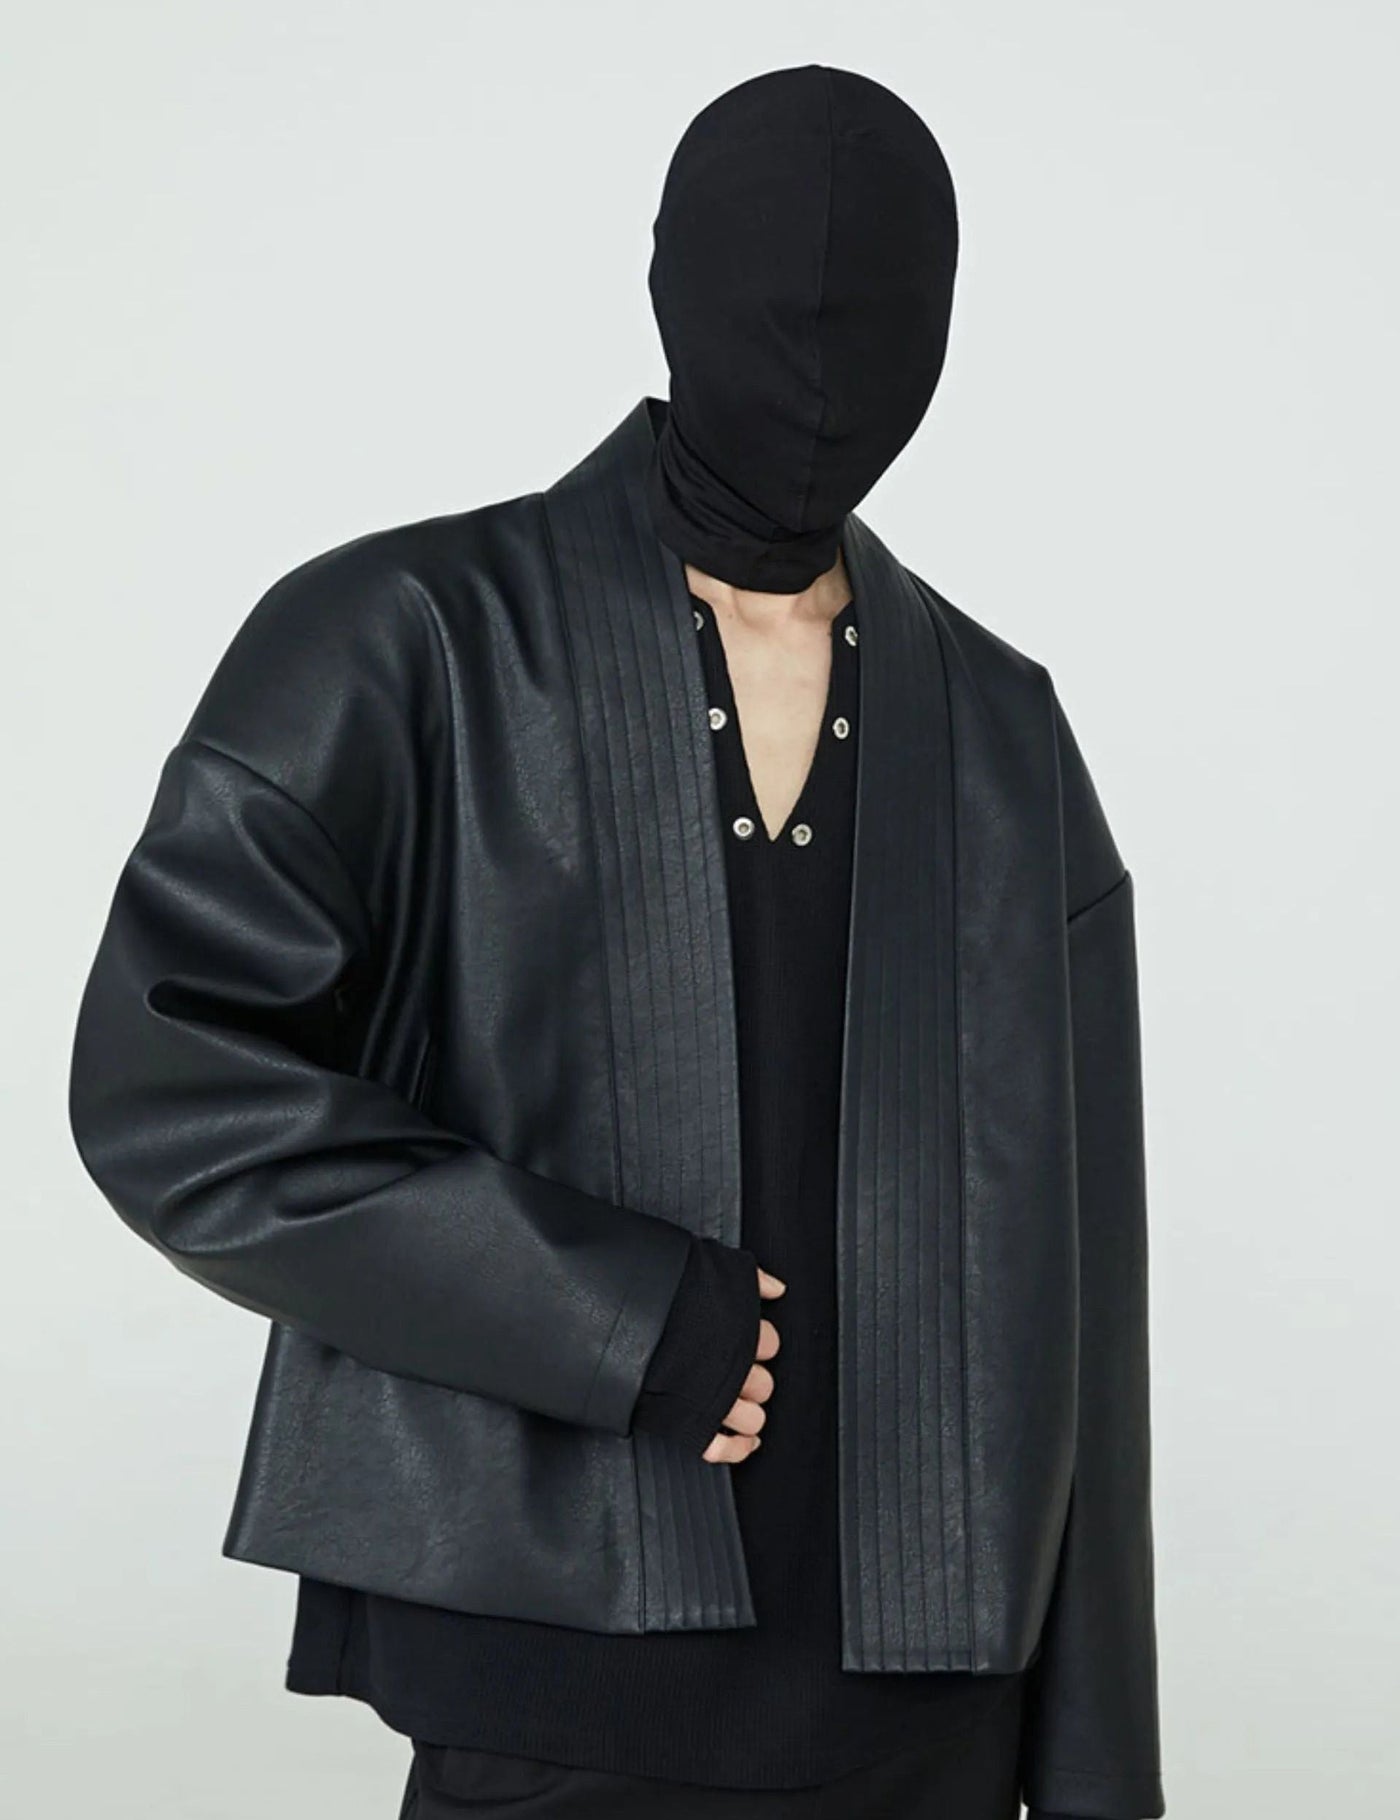 Drop Shoulder Leather Jacket Korean Street Fashion Jacket By FRKM Shop Online at OH Vault